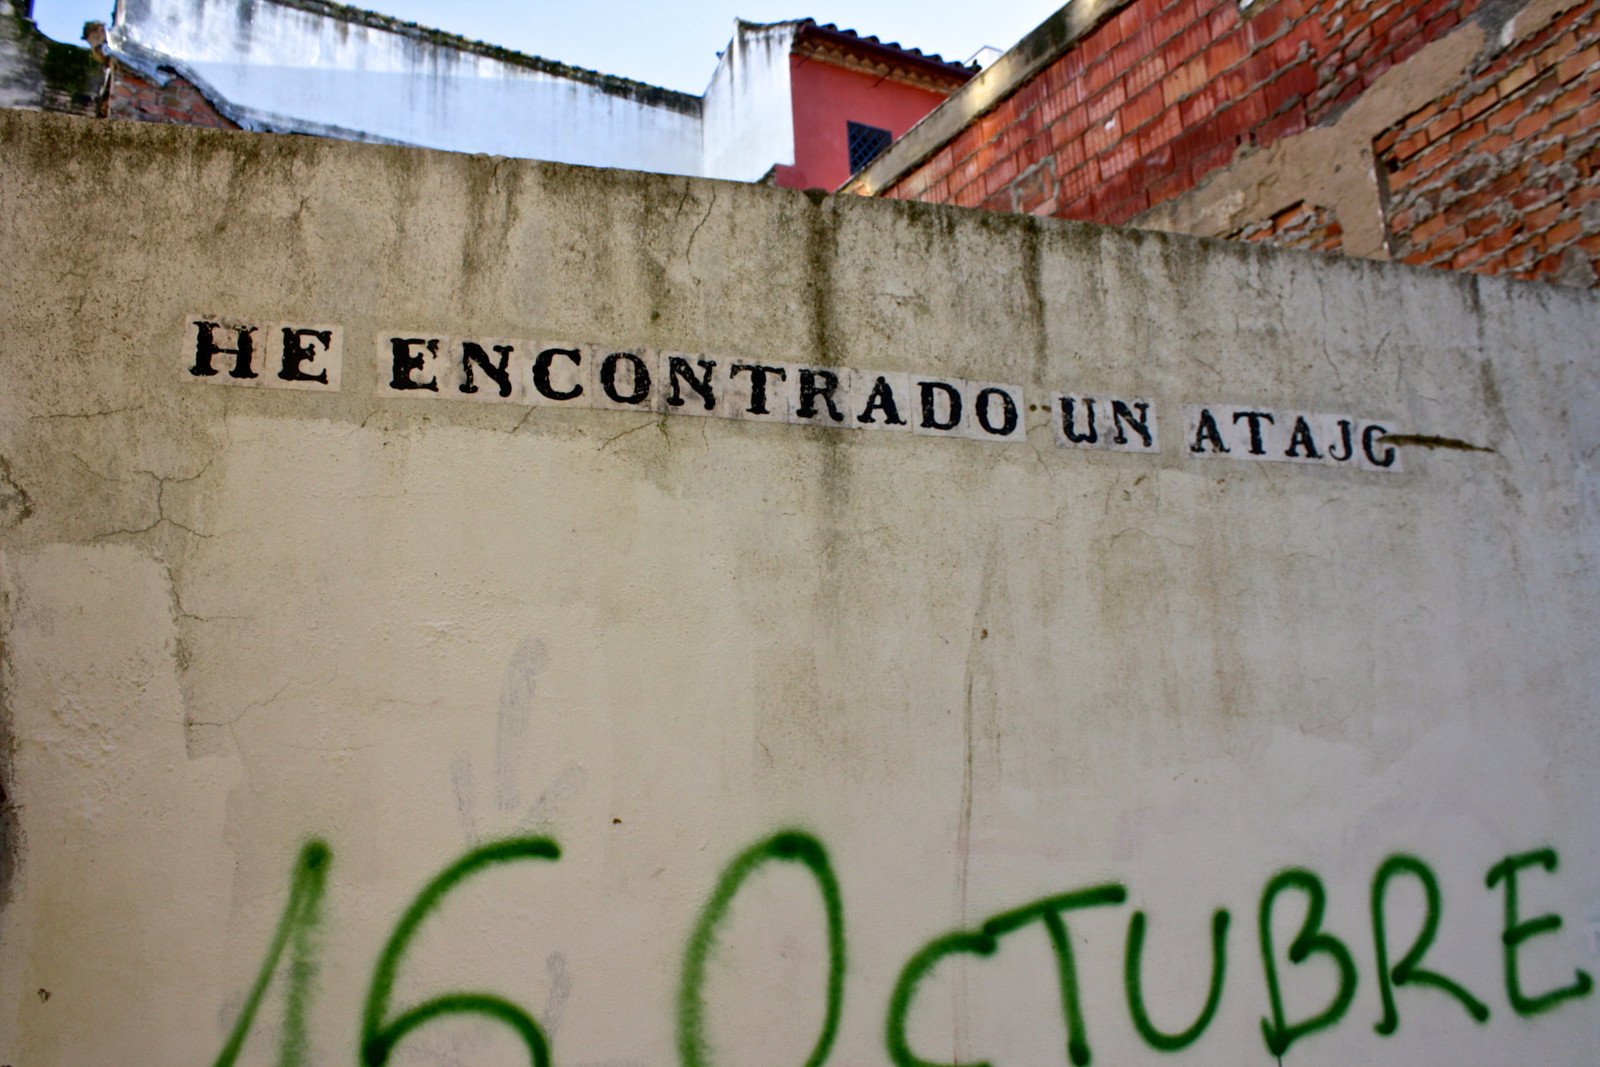 Graffiti from the callejero pirata of Córdoba, Spain